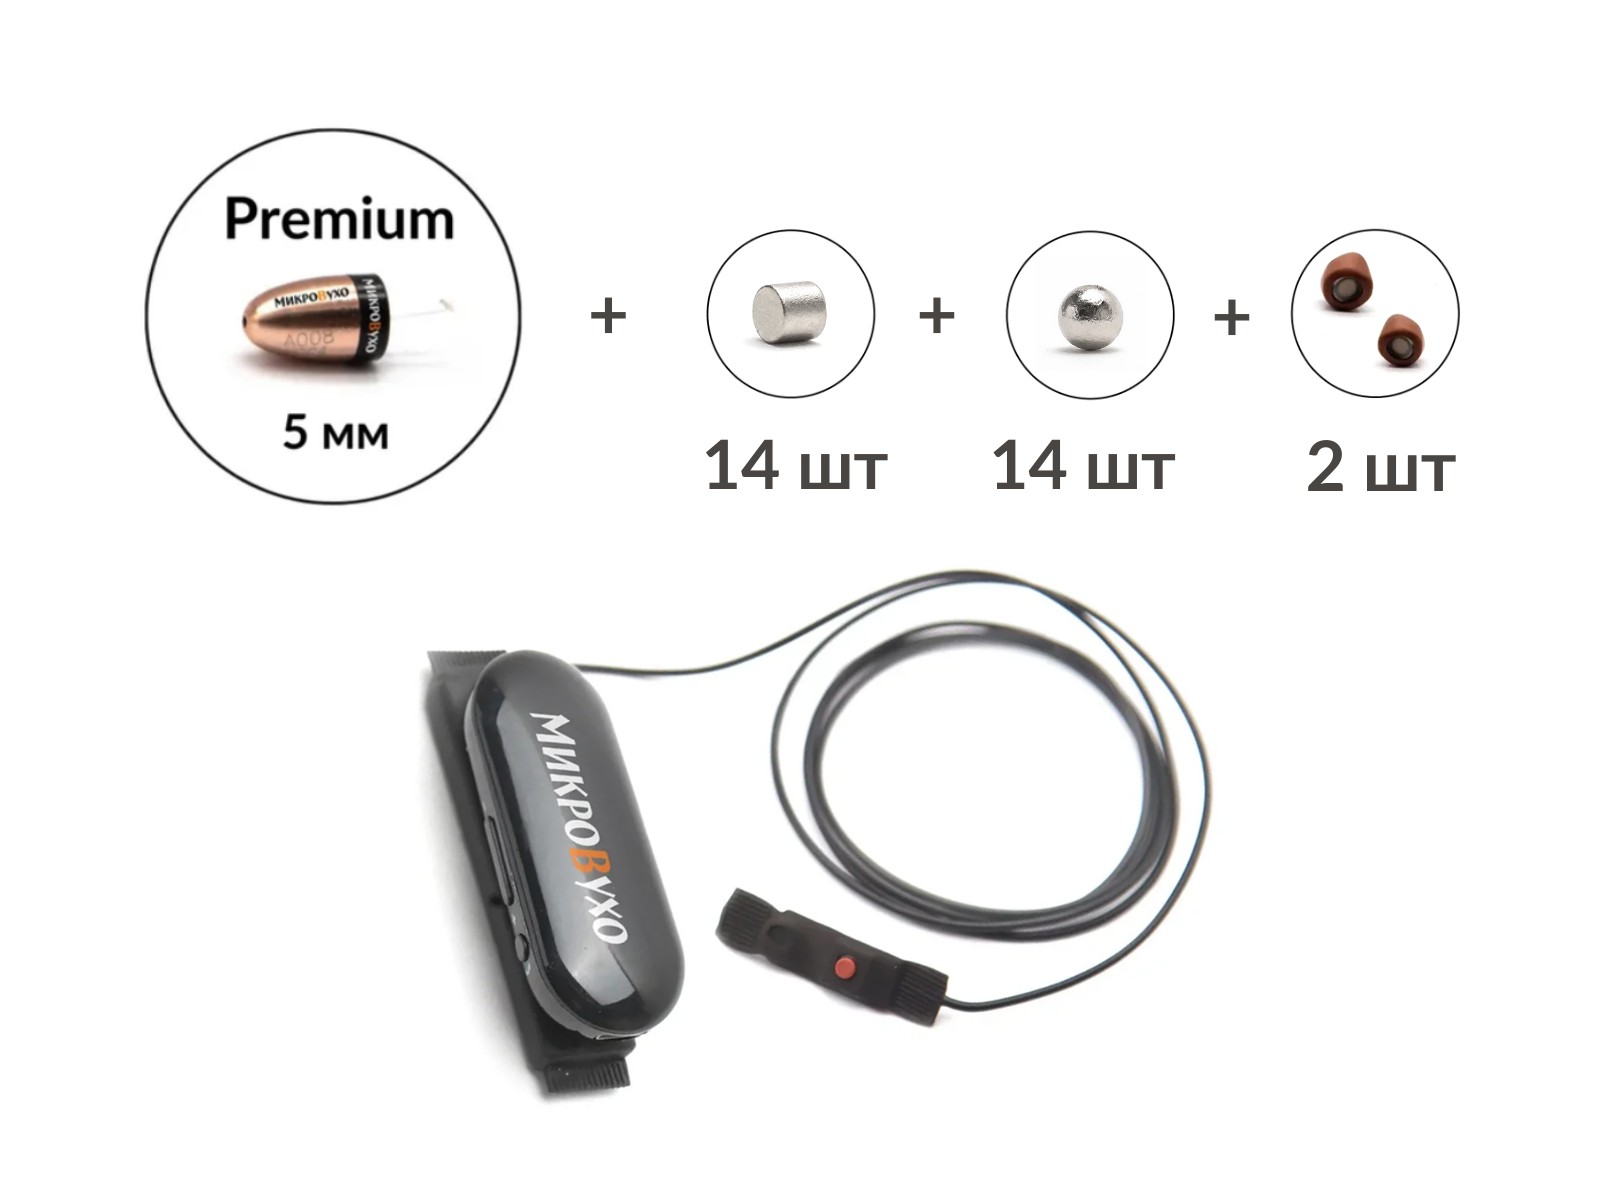 Универсальная гарнитура Bluetooth Box Pro Plus c капсулой Premium и магнитами 2 мм - изображение 2